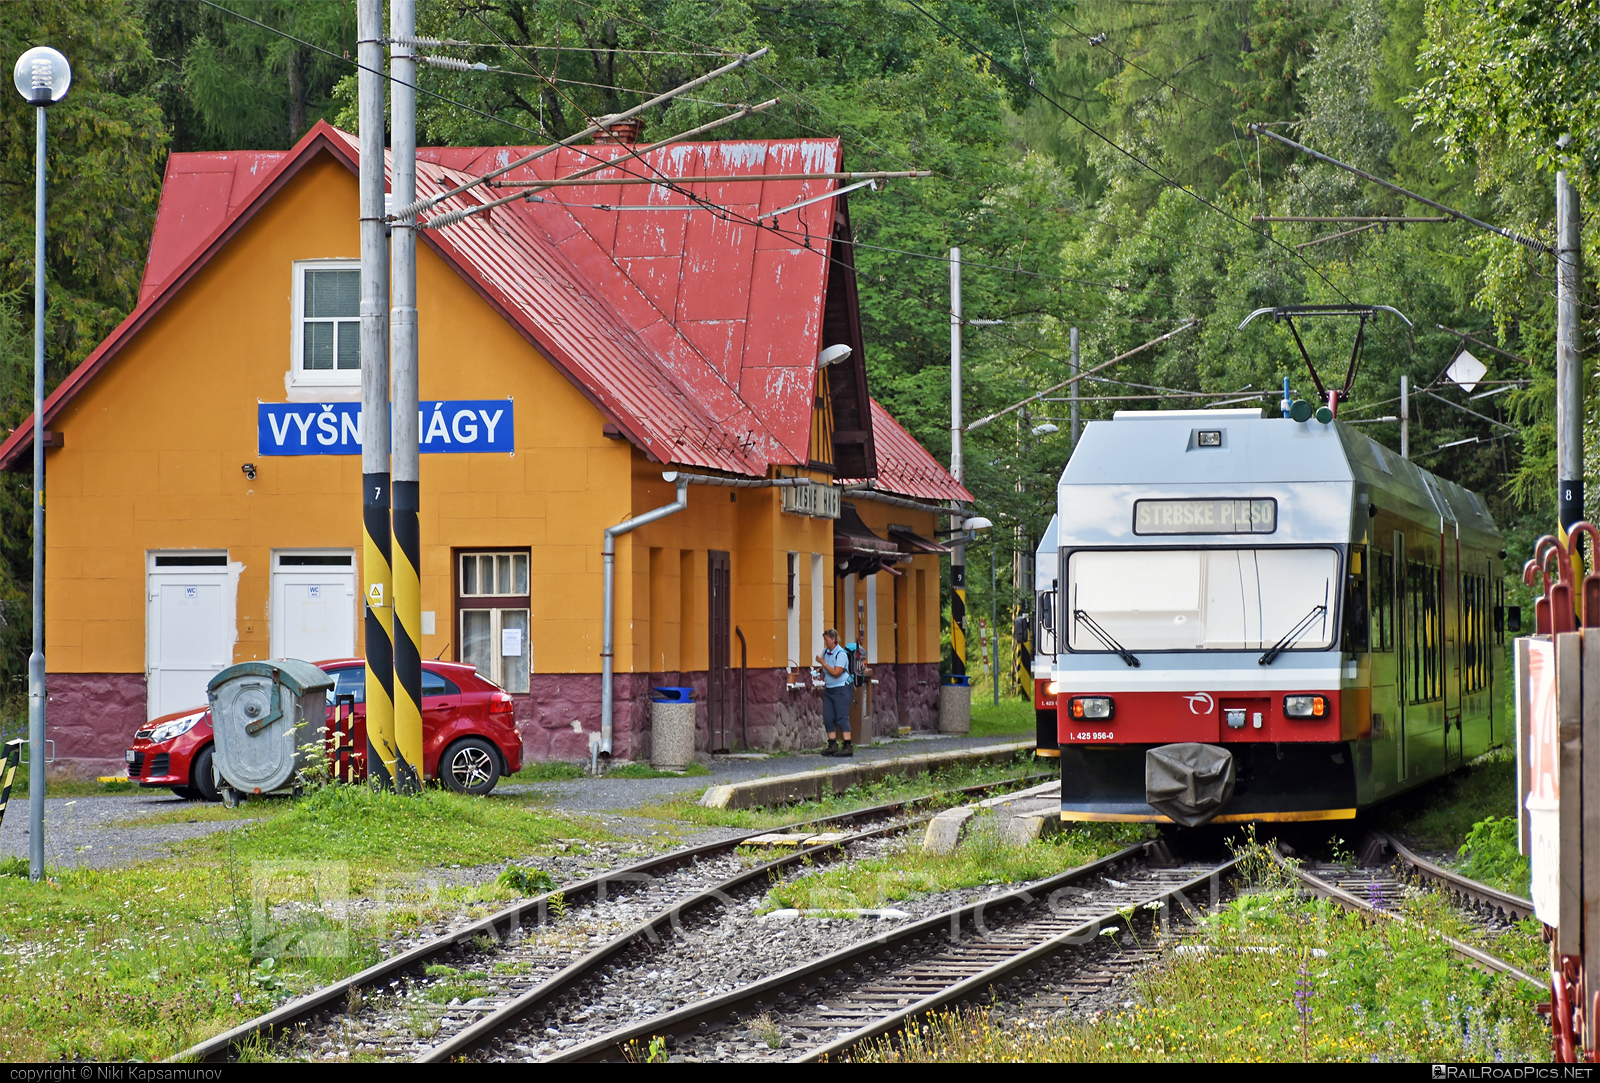 GTW Vysoké Tatry Class 425.95 - 425 956-0 operated by Železničná Spoločnost' Slovensko, a.s. #ZeleznicnaSpolocnostSlovensko #gtw26 #gtwvysoketatry #tetrapack #tez #zssk #zssk425 #zssk42595